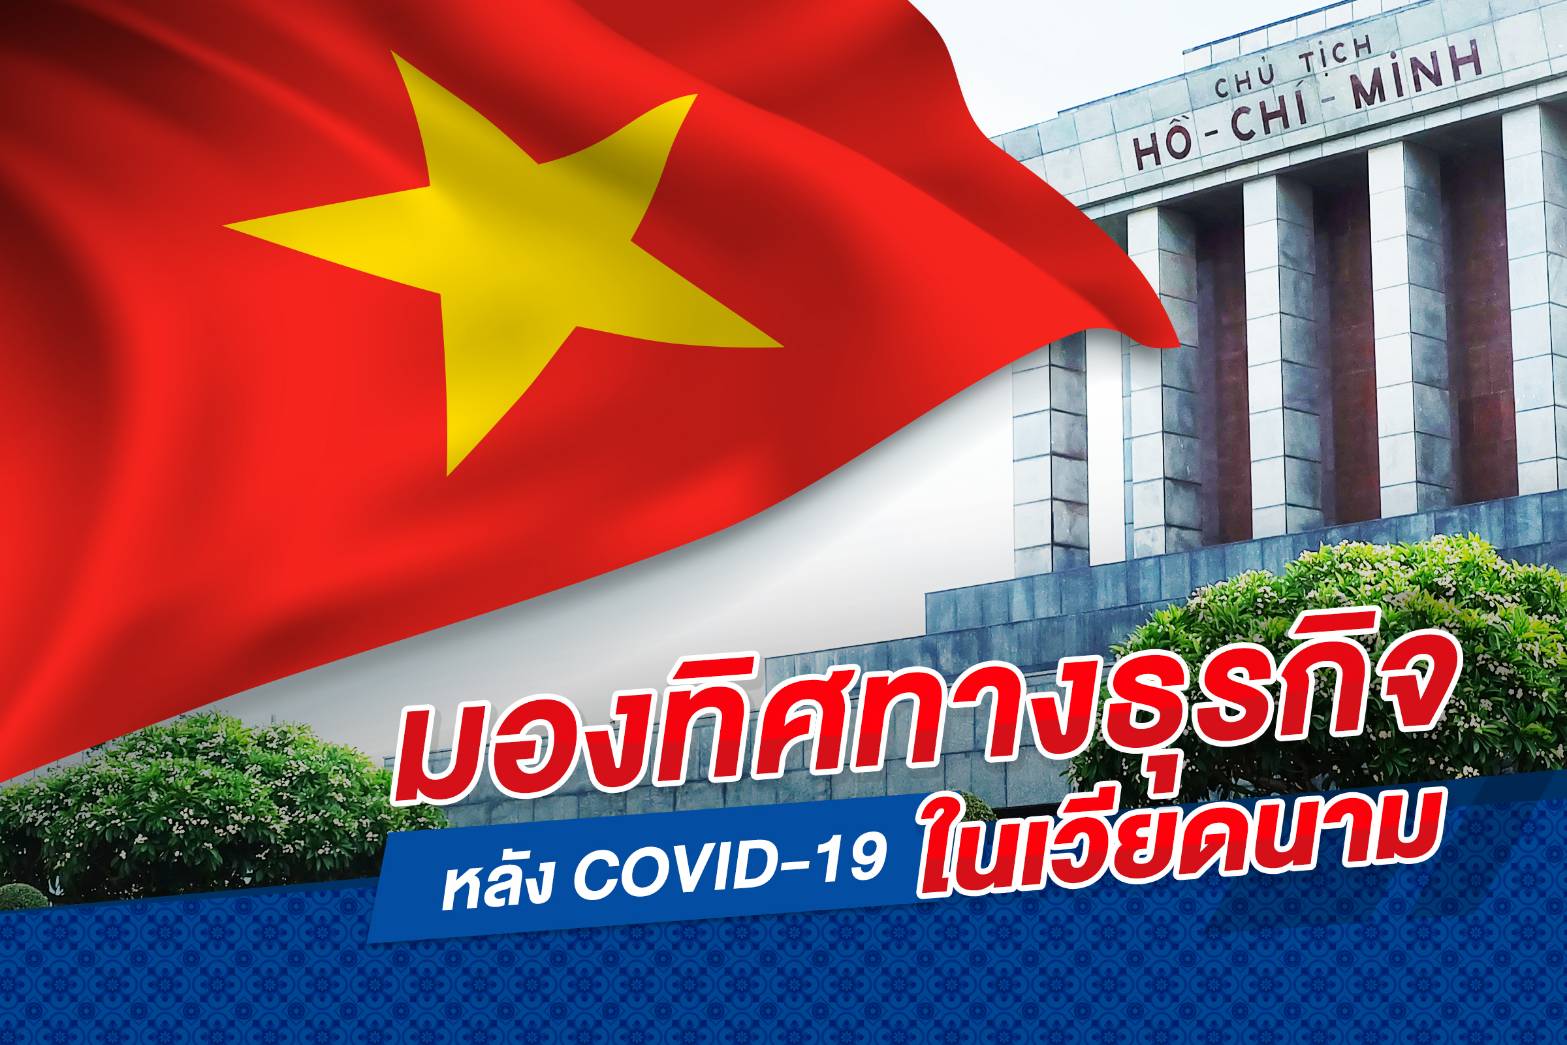 มองทิศทางธุรกิจ หลังวิกฤต COVID-19 ในเวียดนาม